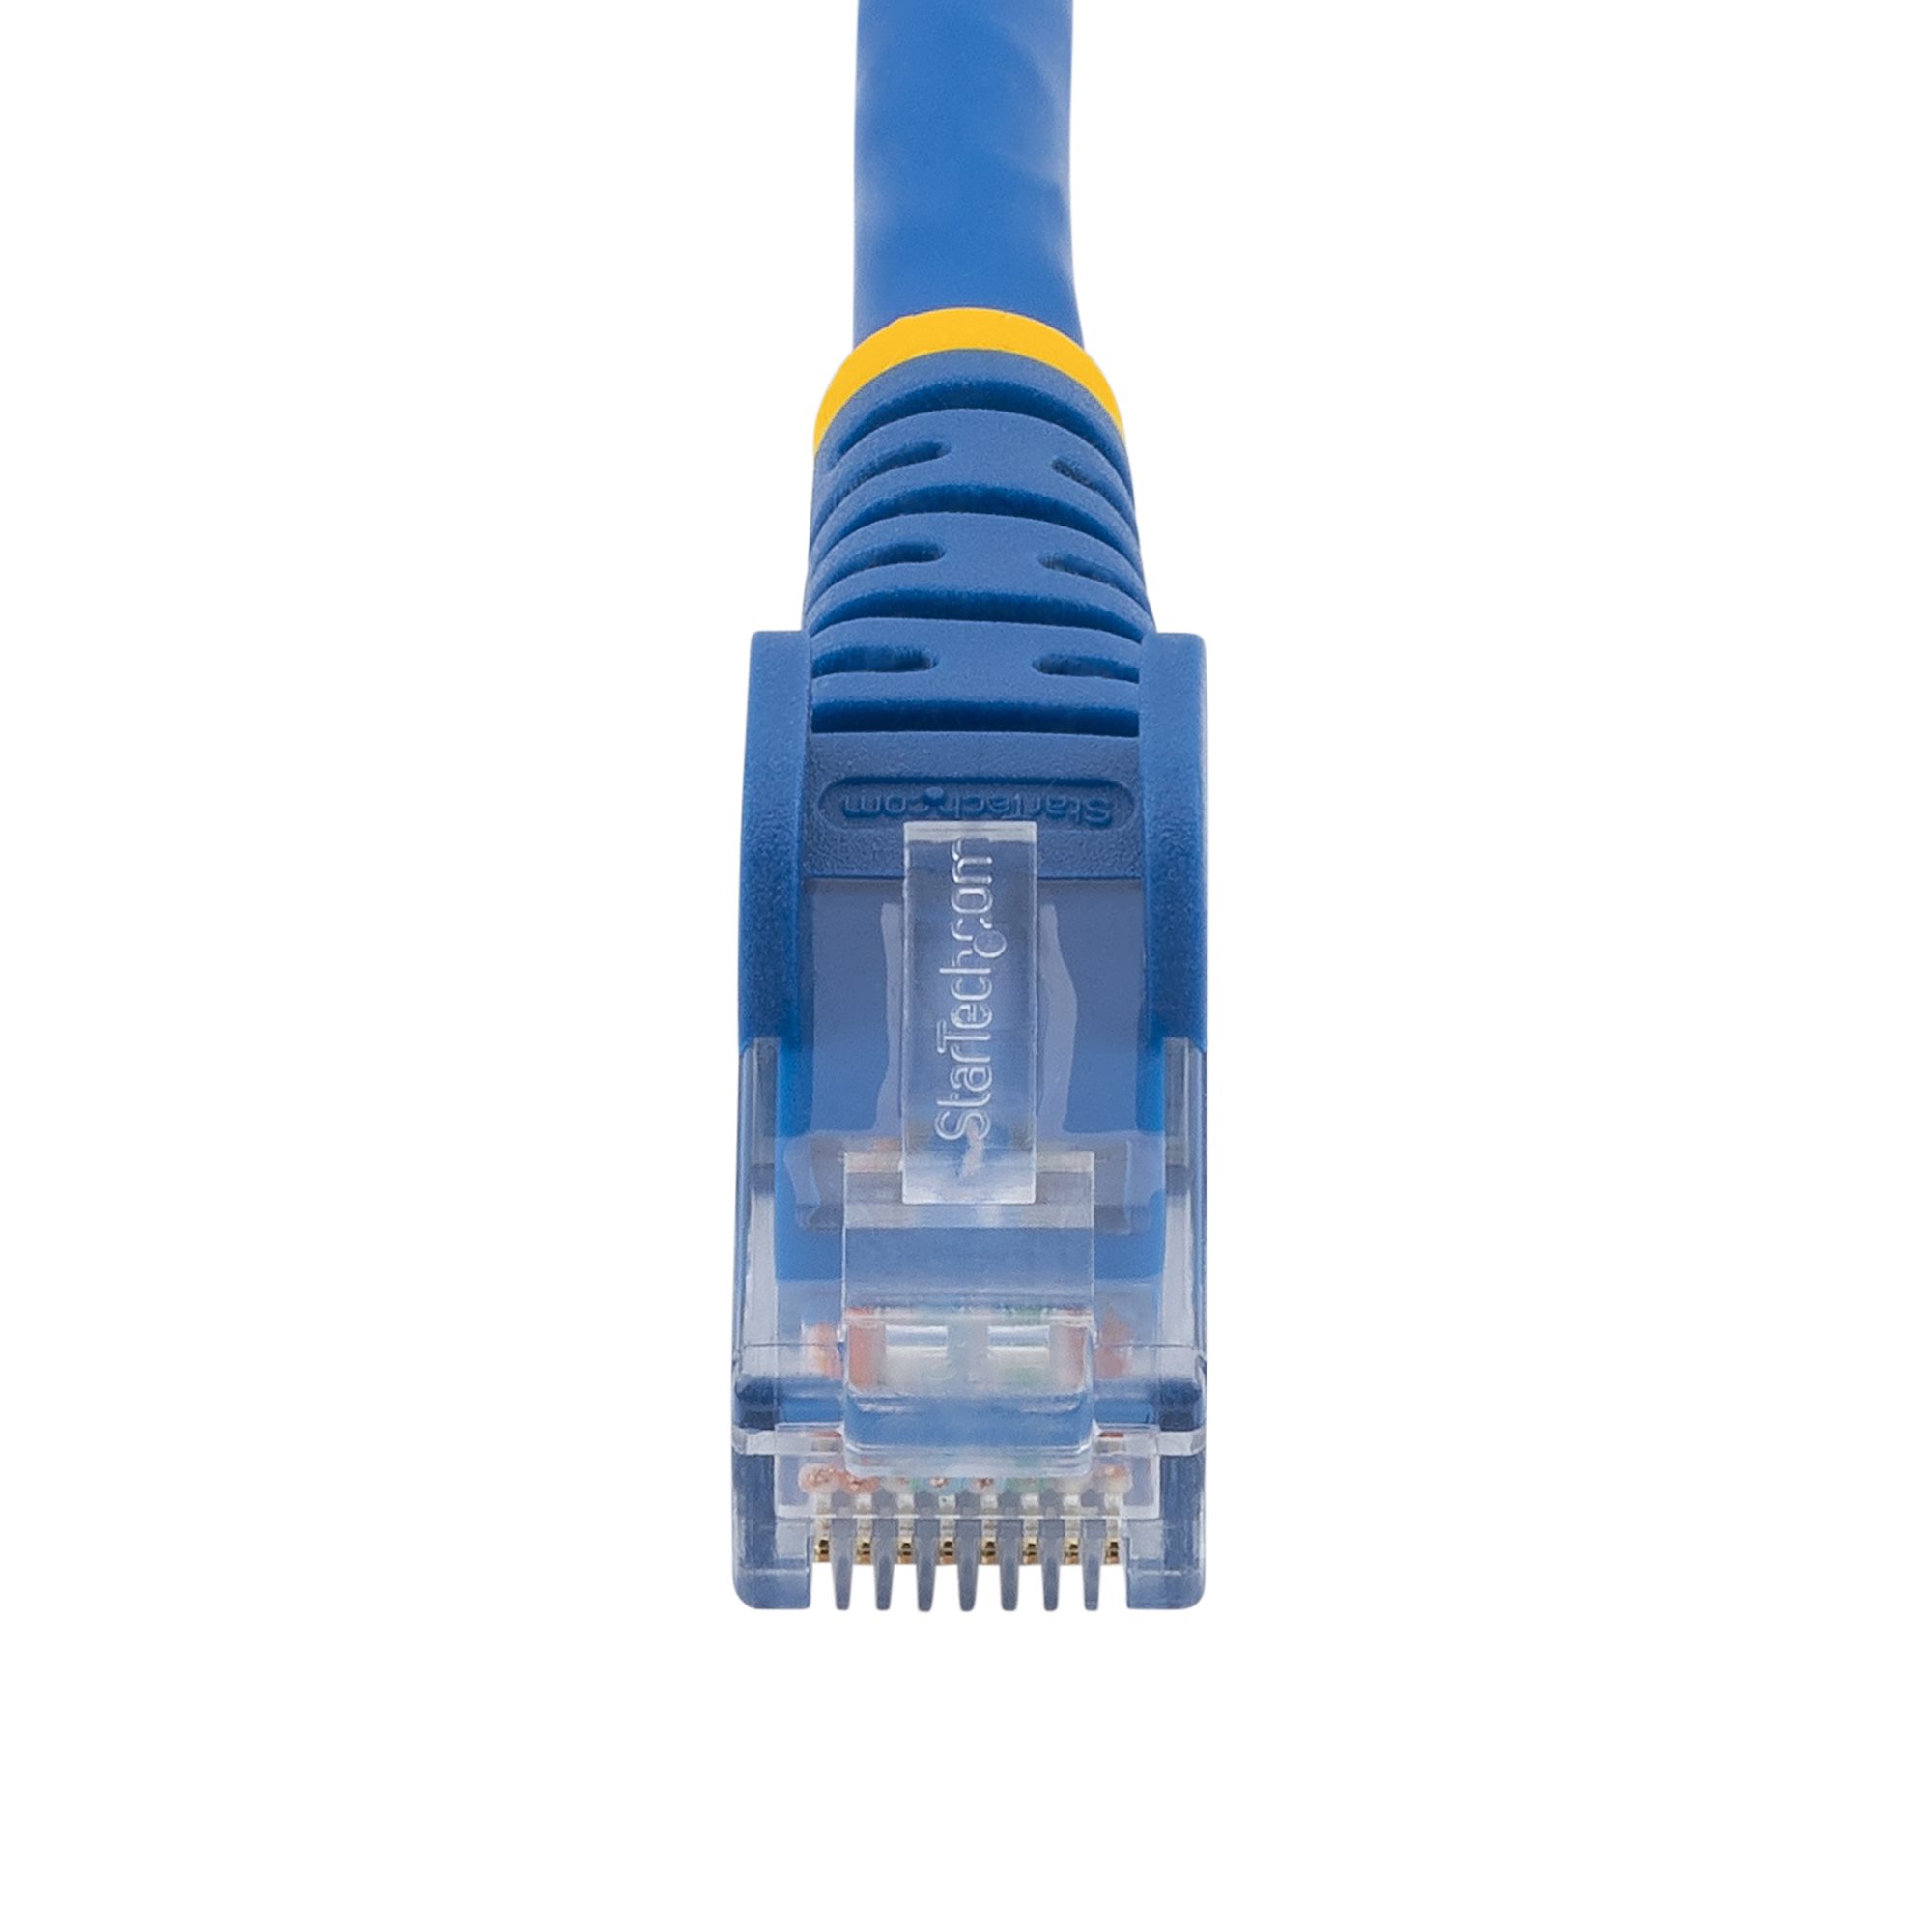 Câble réseau ethernet RJ45 3M Cat.6 (CA-RJ45-3M) à 16,67 MAD 